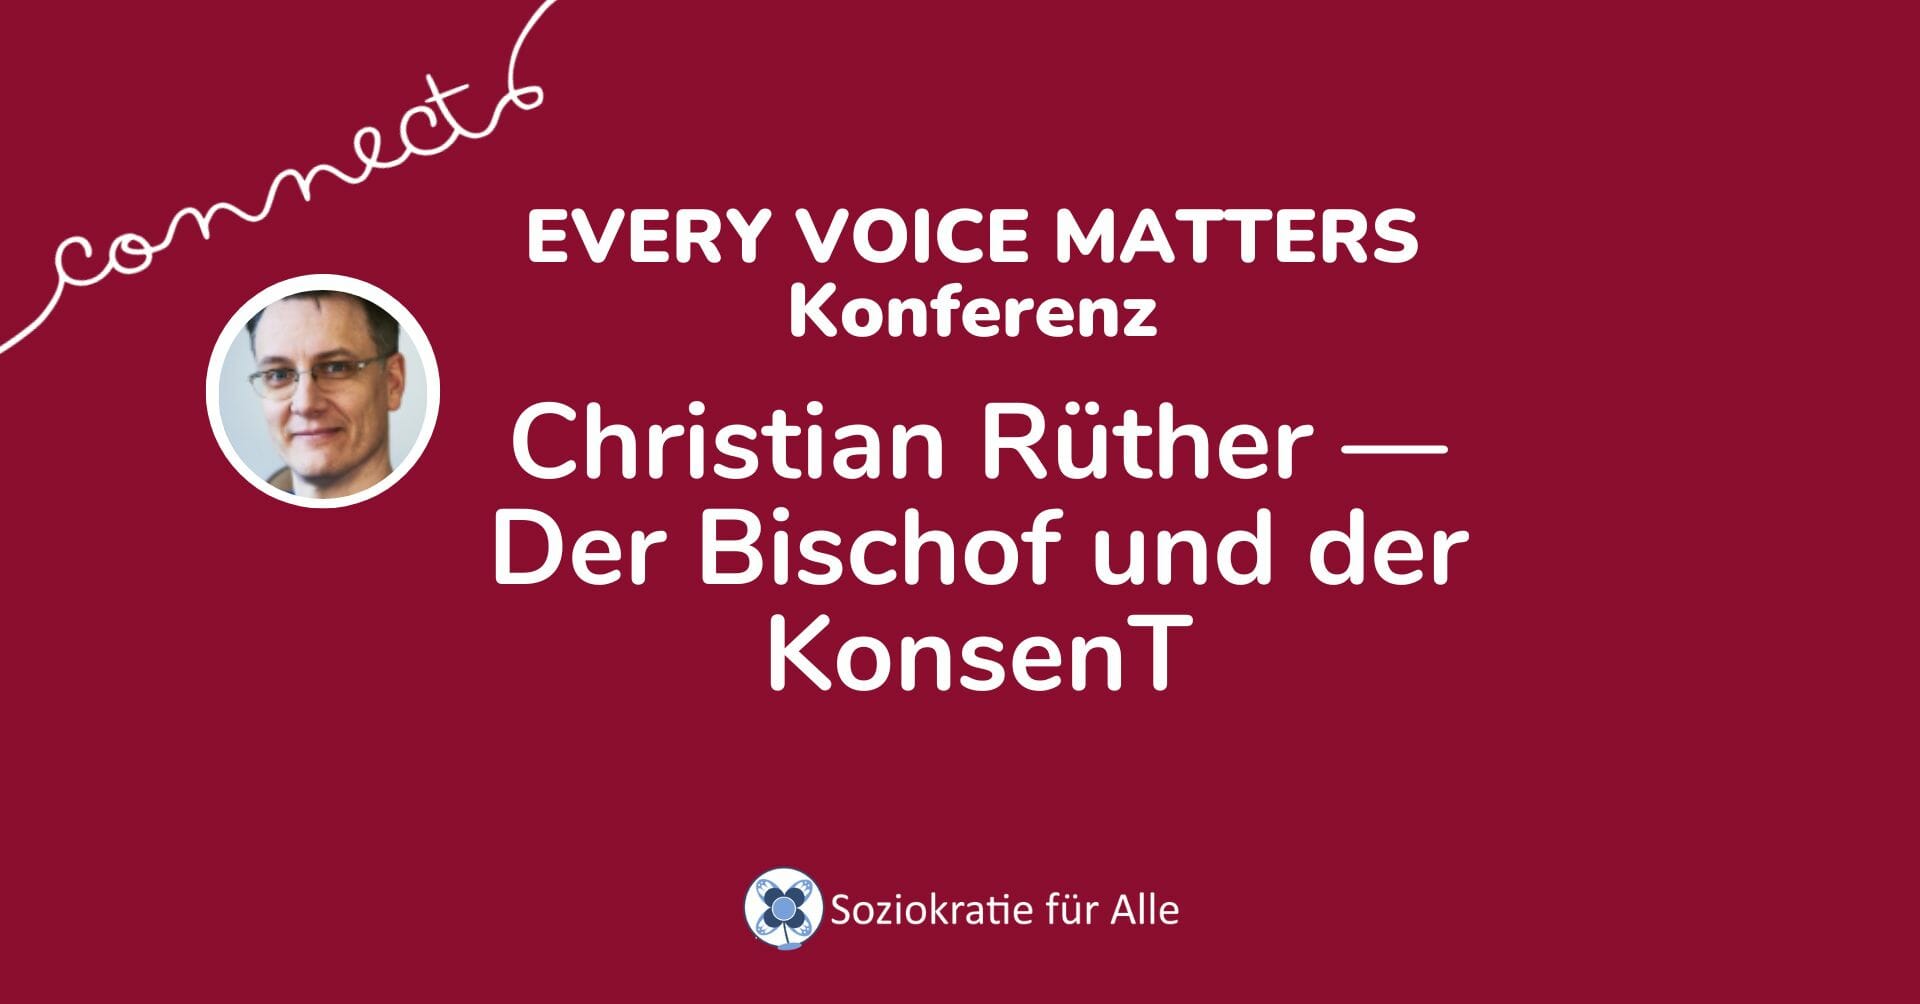 Christian Rüther —Der Bischof und der KonsenT